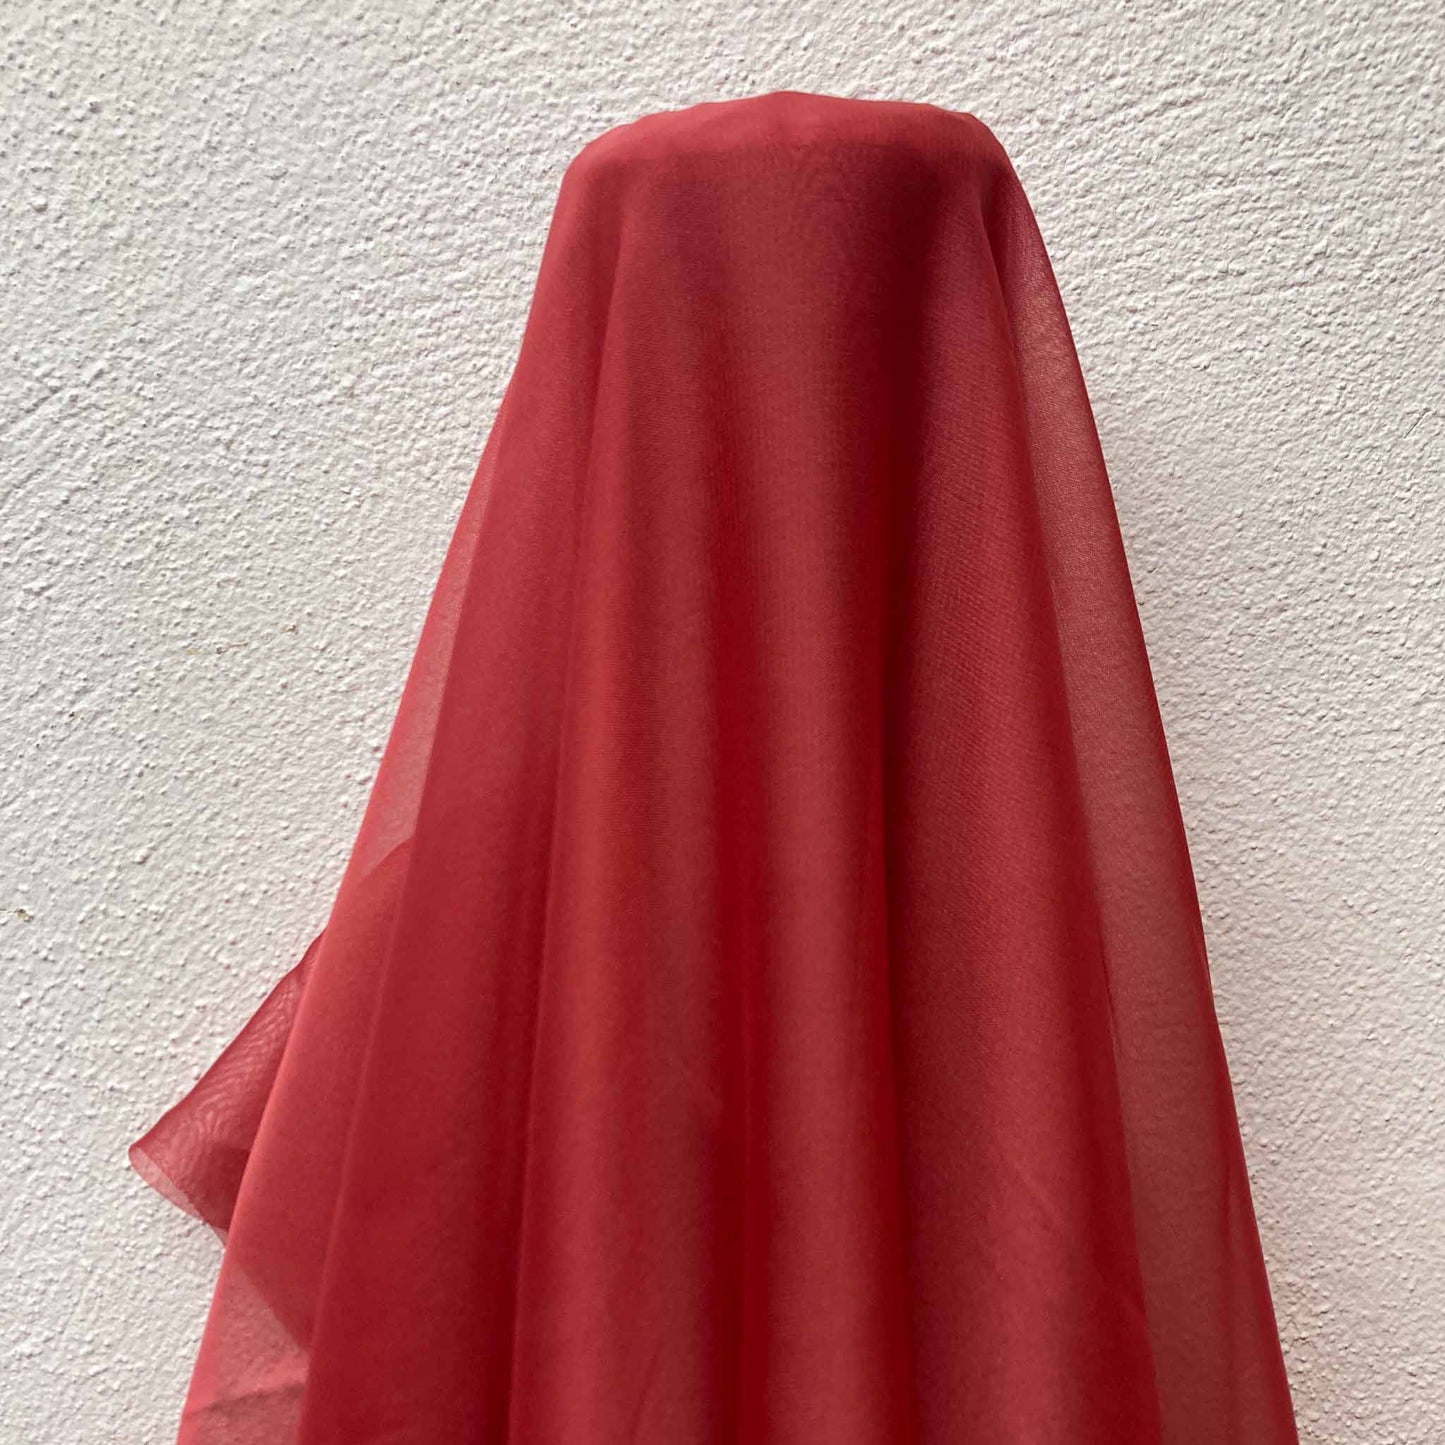 Chiffon Fabric - Red